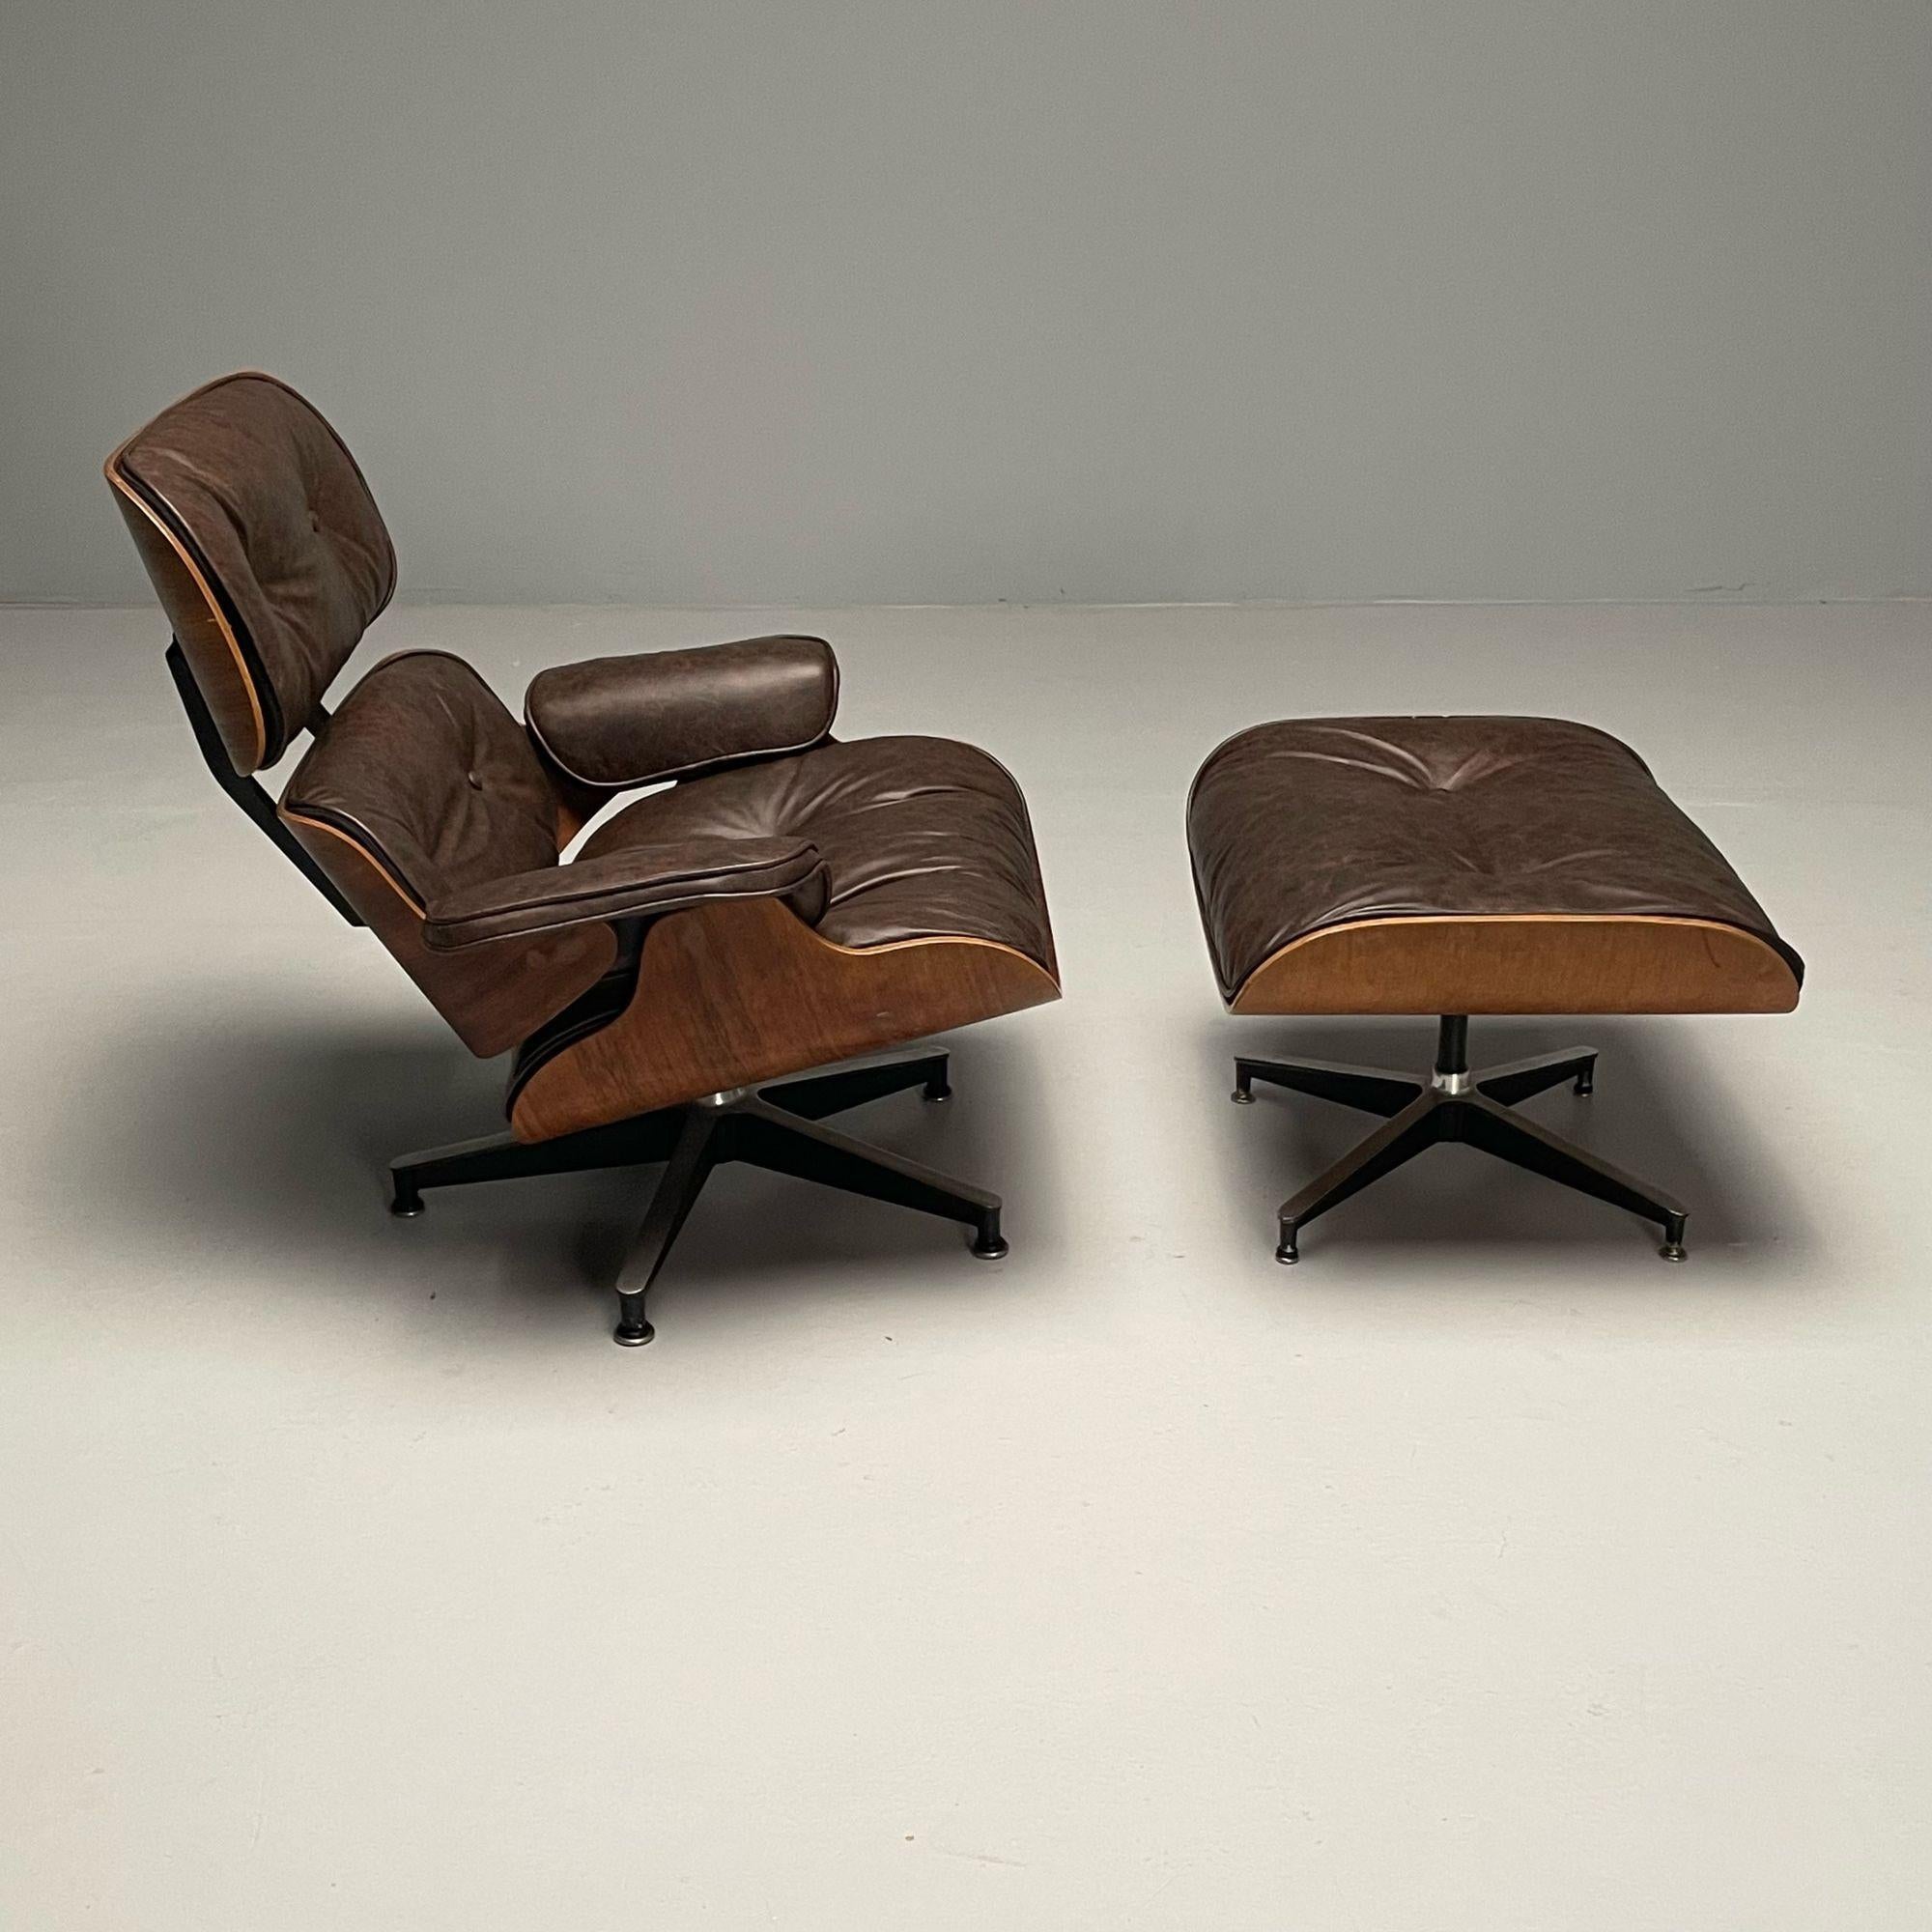 Herman Miller, modernité du milieu du siècle, chaise longue Eames, ottoman, États-Unis, années 1960

Chaise longue vintage Herman Miller avec ottoman assorti, conçue par Charles Eames (1907-1978) et Ray Eames (1912-1988). Design/One Modern